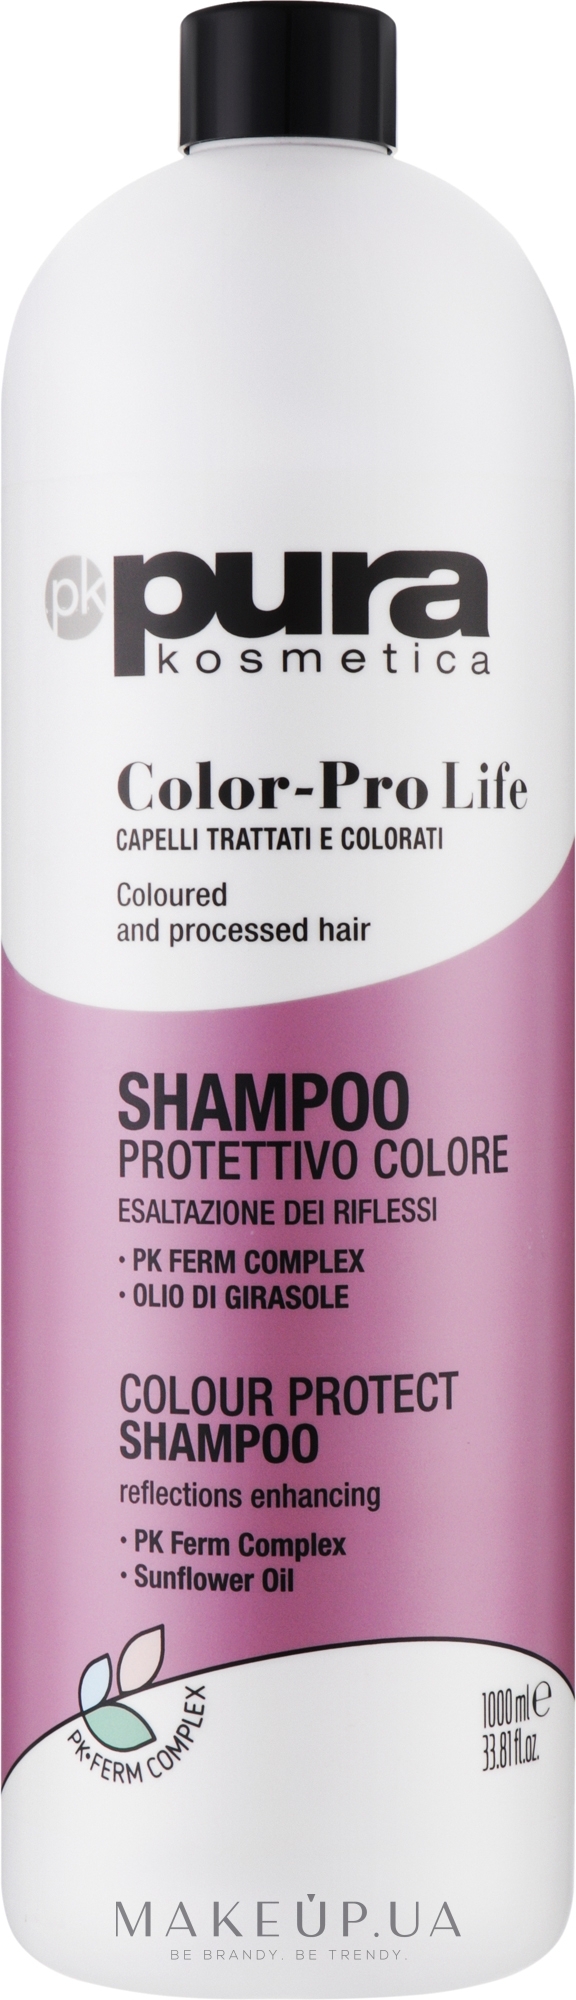 Шампунь для окрашенных волос - Pura Kosmetica Color Pro Life Shampoo — фото 1000ml